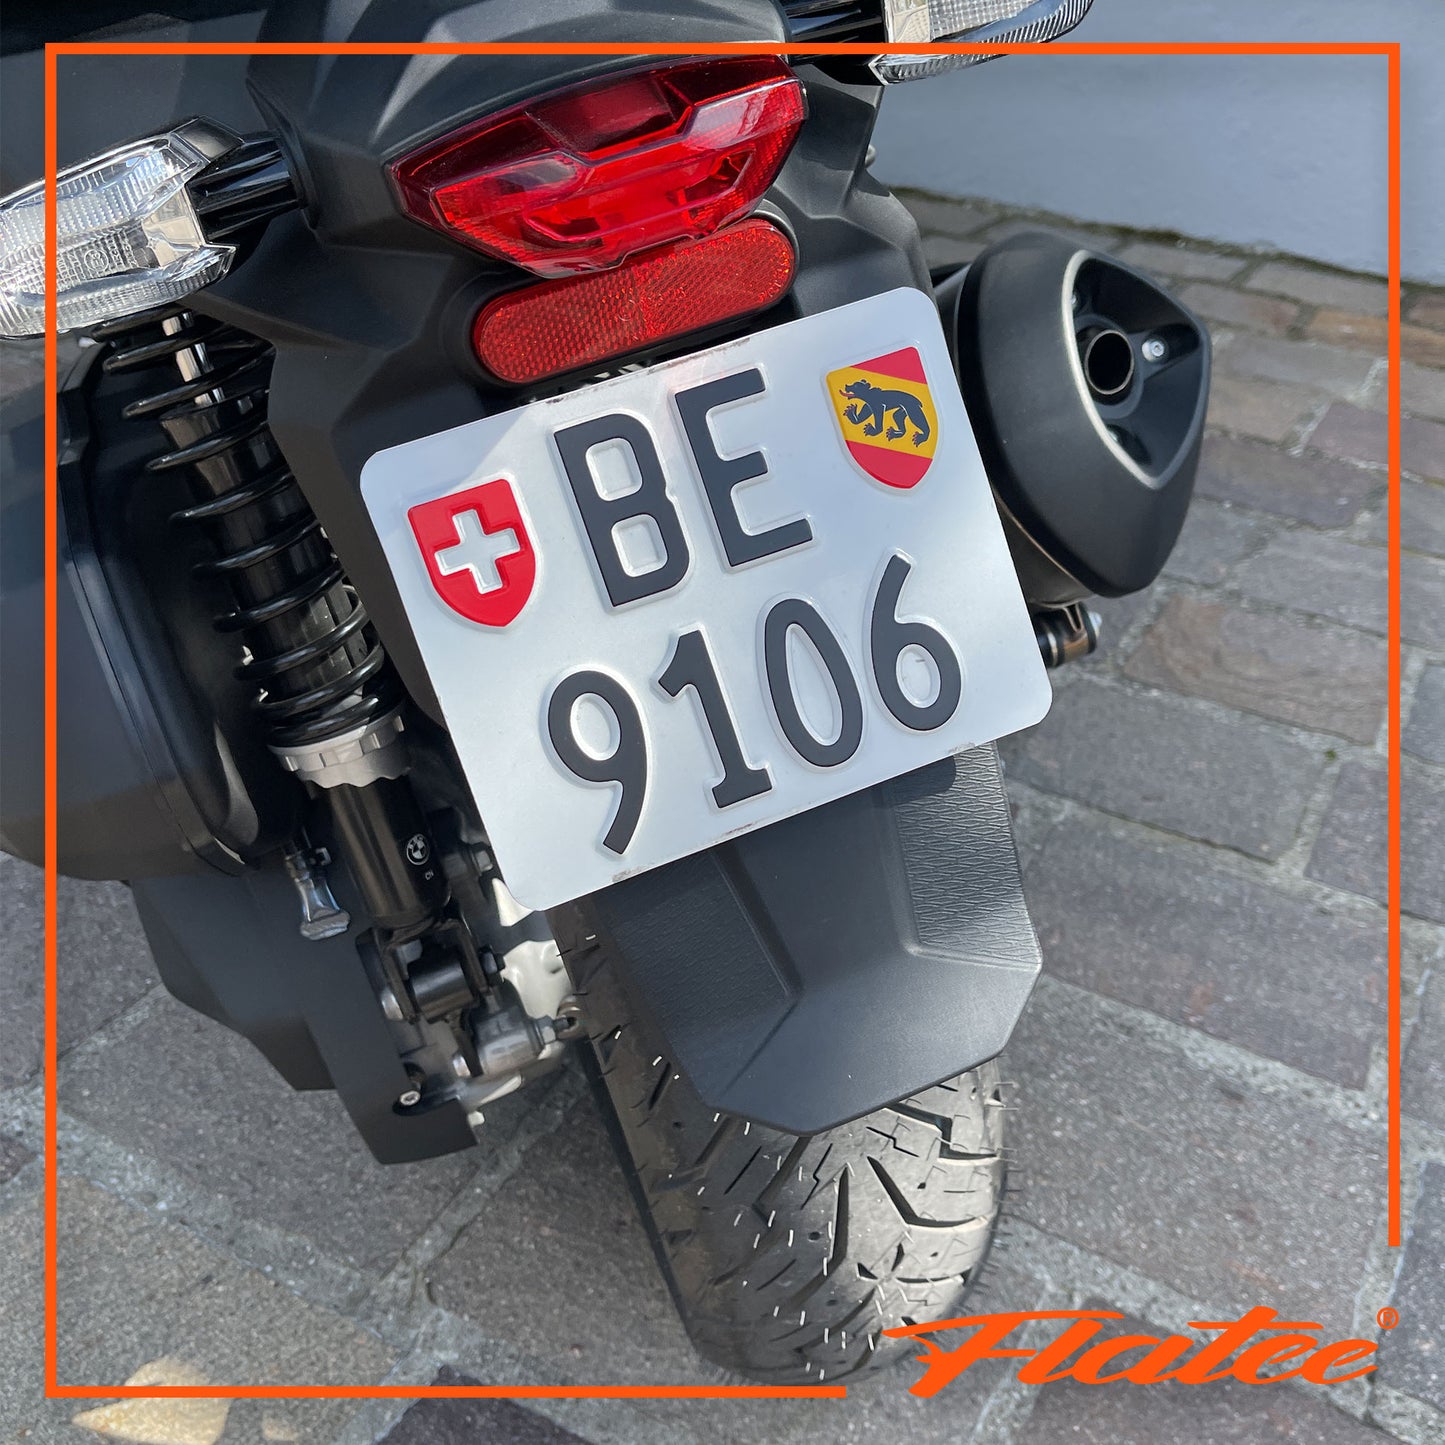 Flatee Wechselschild-Set für Motorrad 13x17cm Schweizer Kontrollschilder